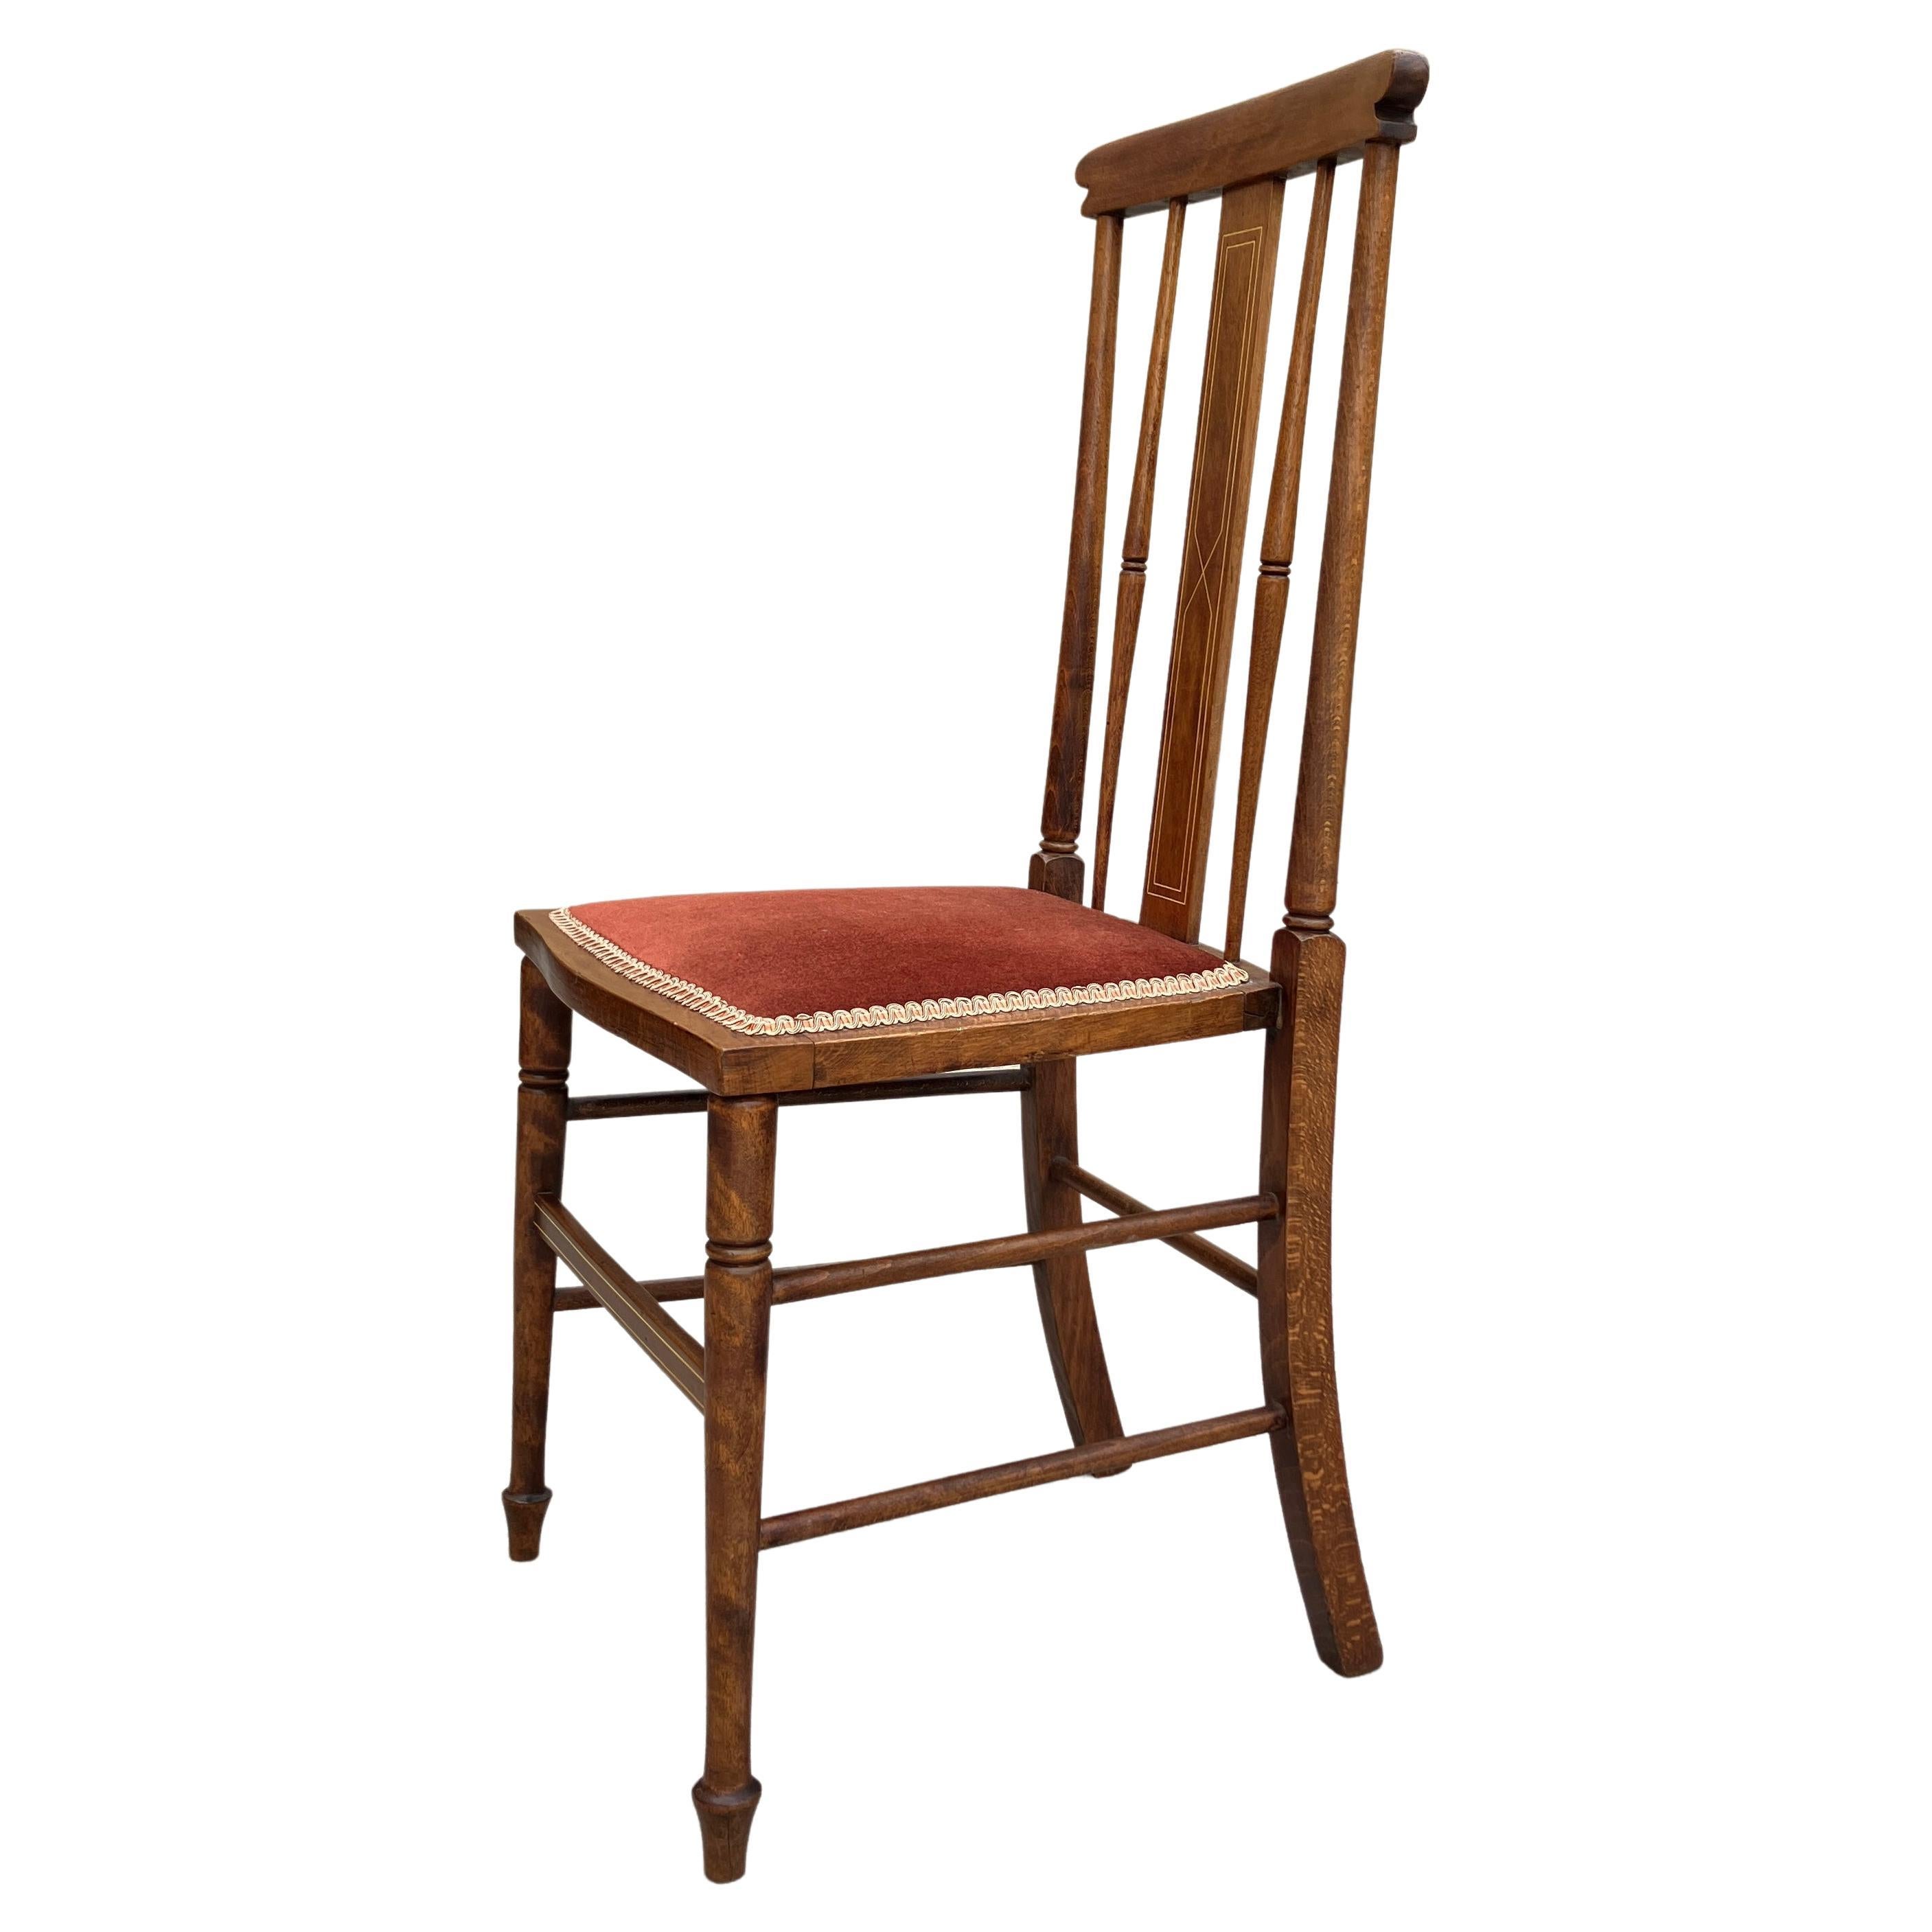 Une chaise à dossier en fuseau Arts & Crafts du début des années 1900, absolument magnifique. Fabriqué en Angleterre. La chaise a des pieds délicats et des fuseaux façonnés sur le dossier décoratif. Le dossier de la chaise est haut et droit et